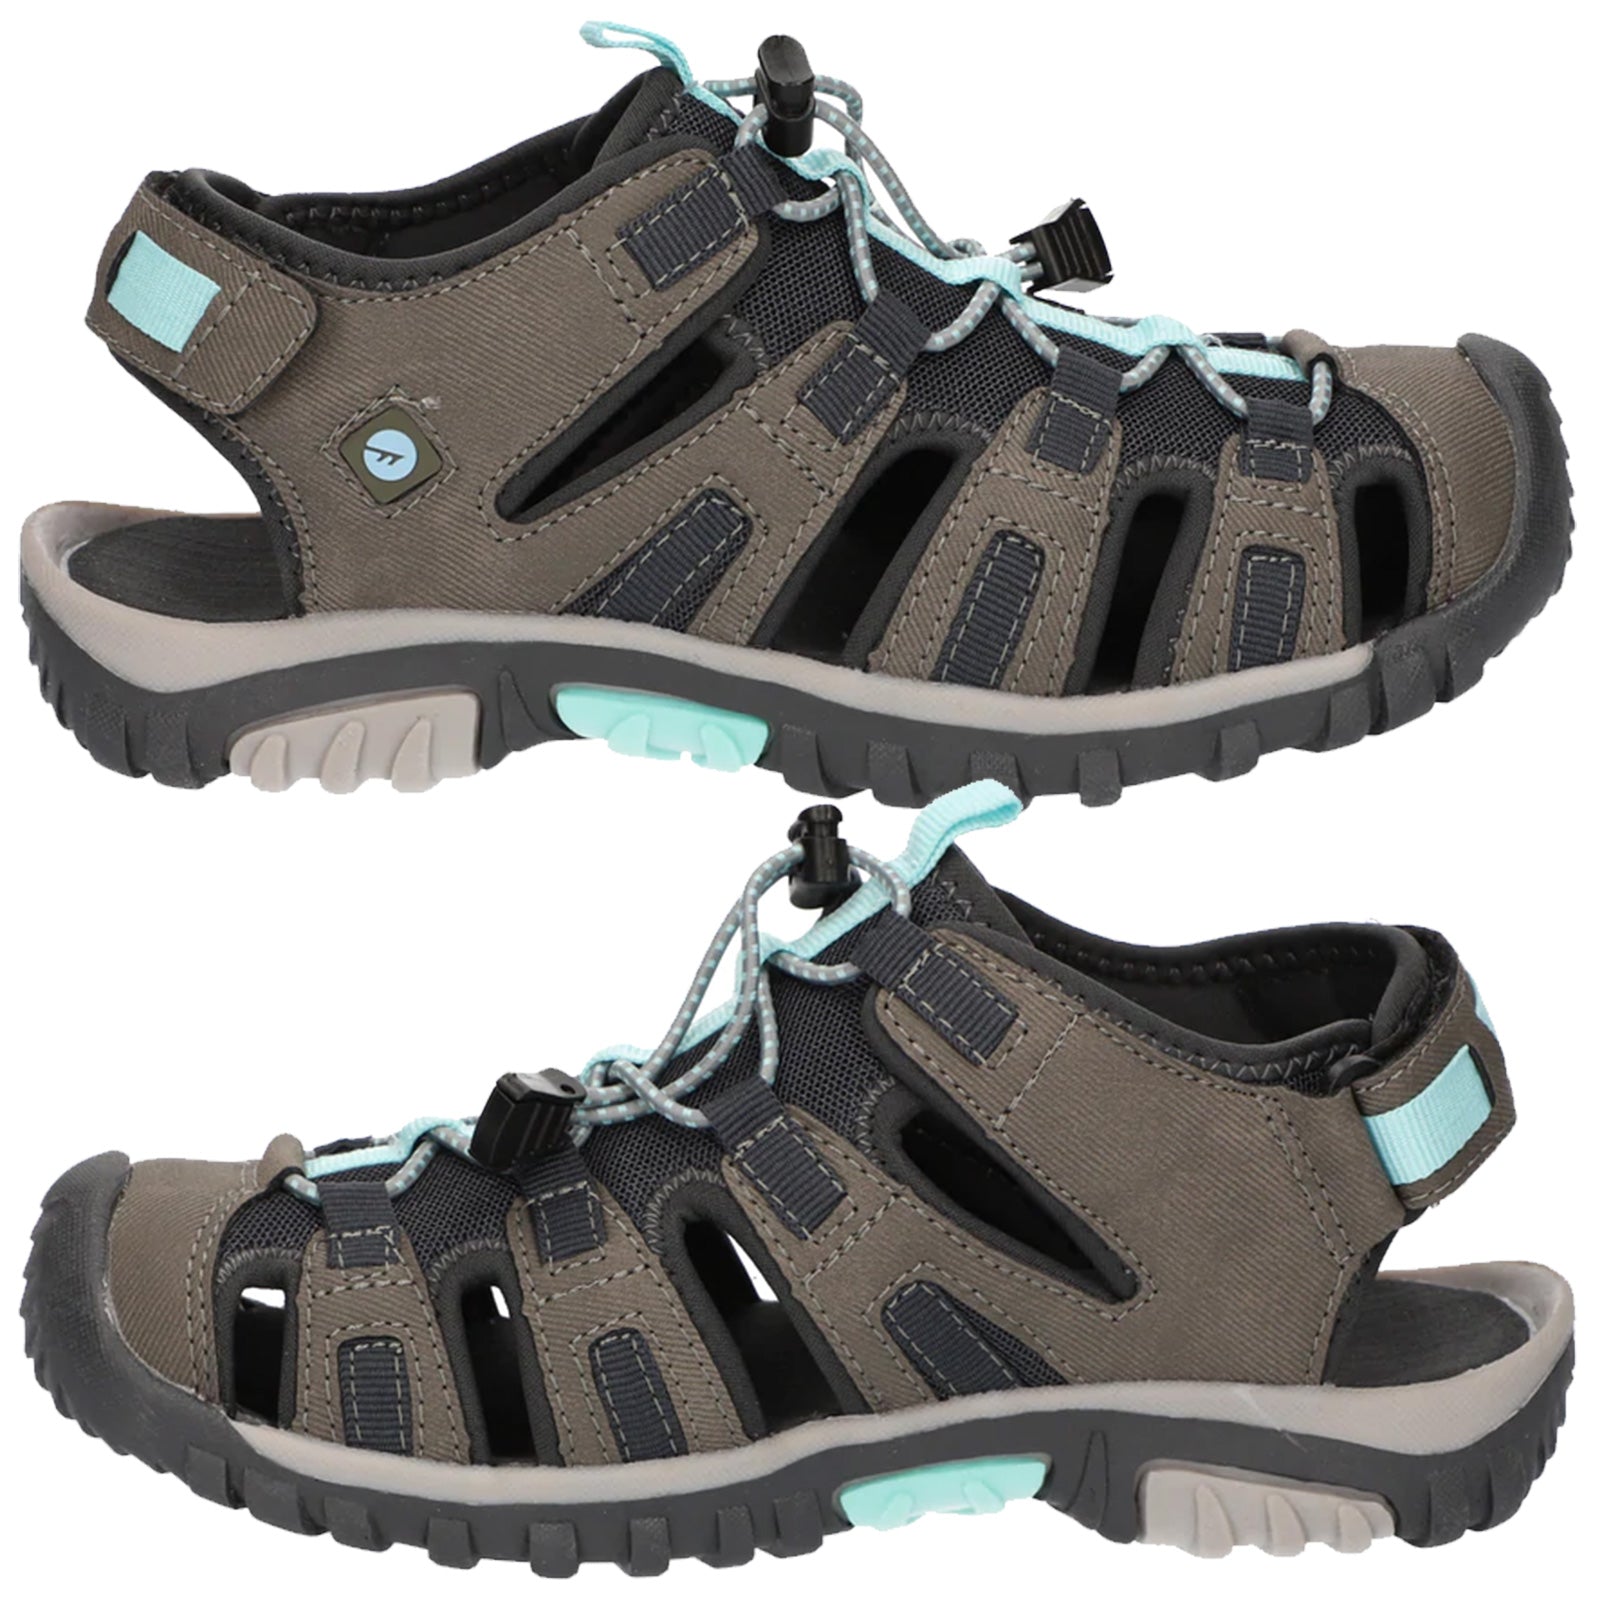 Walking Hi-Tec More – Sports Sport Cove Sandals Ladies